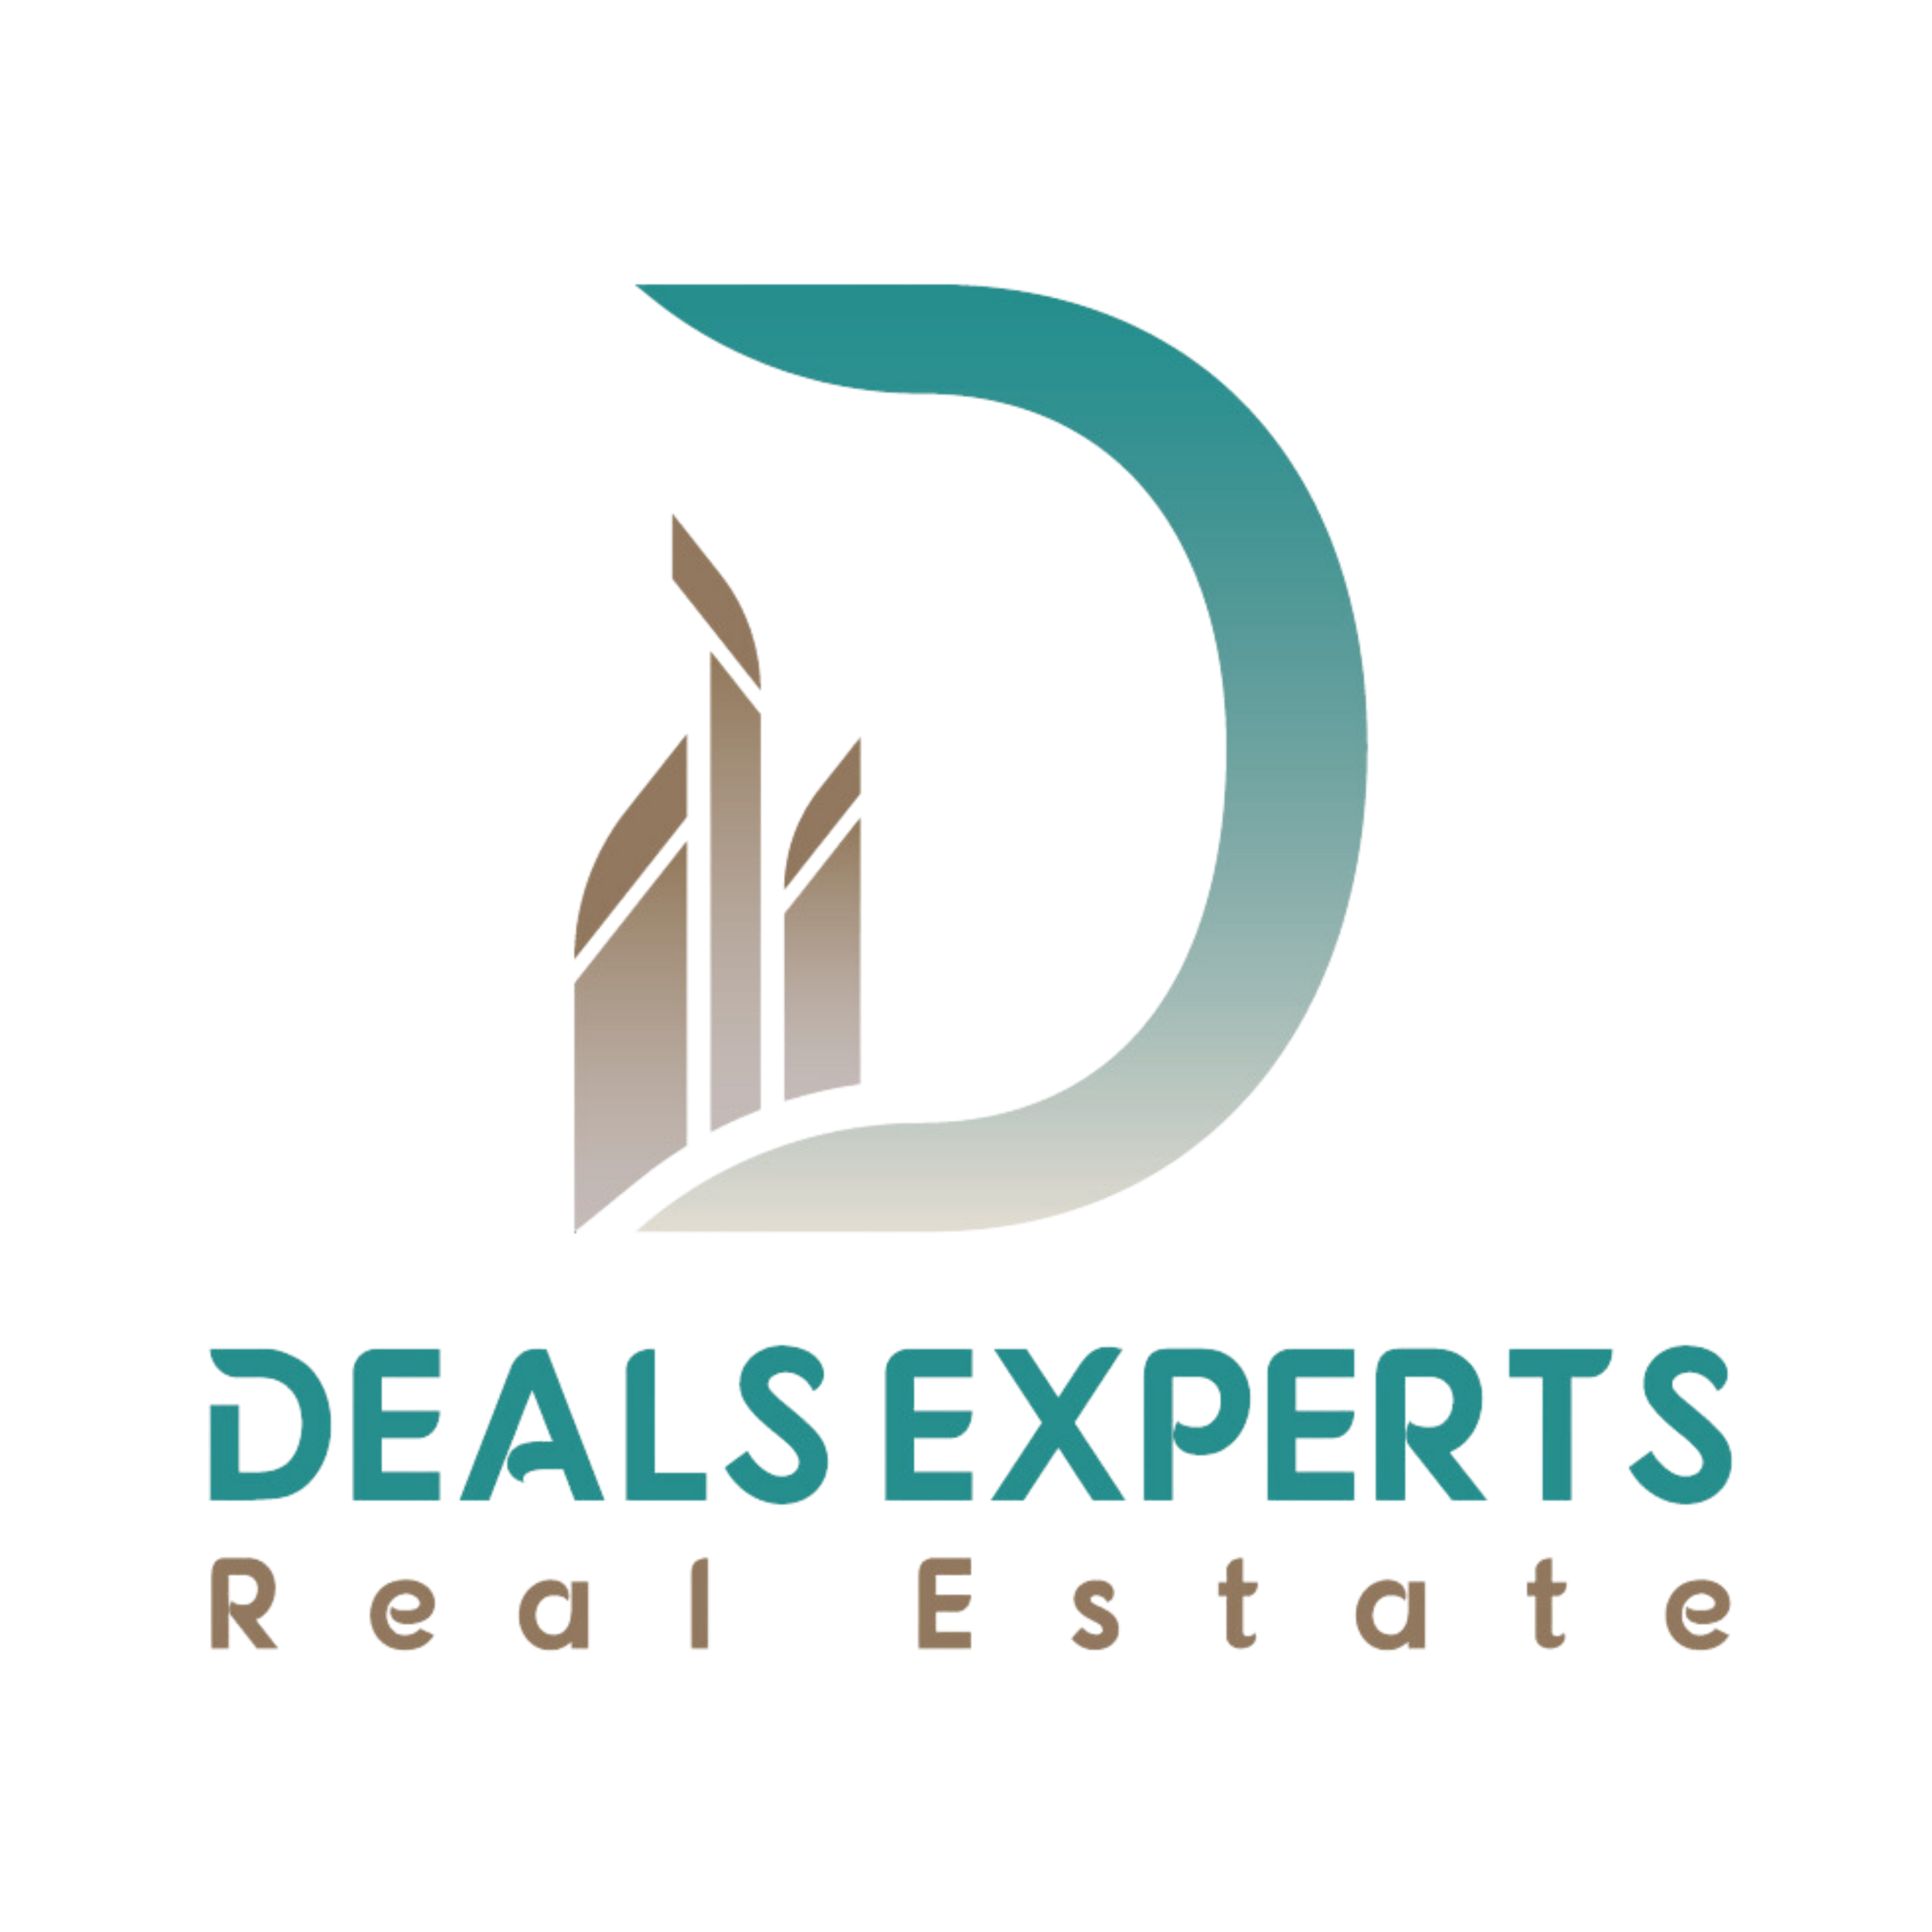 Deals Experts Real Estate